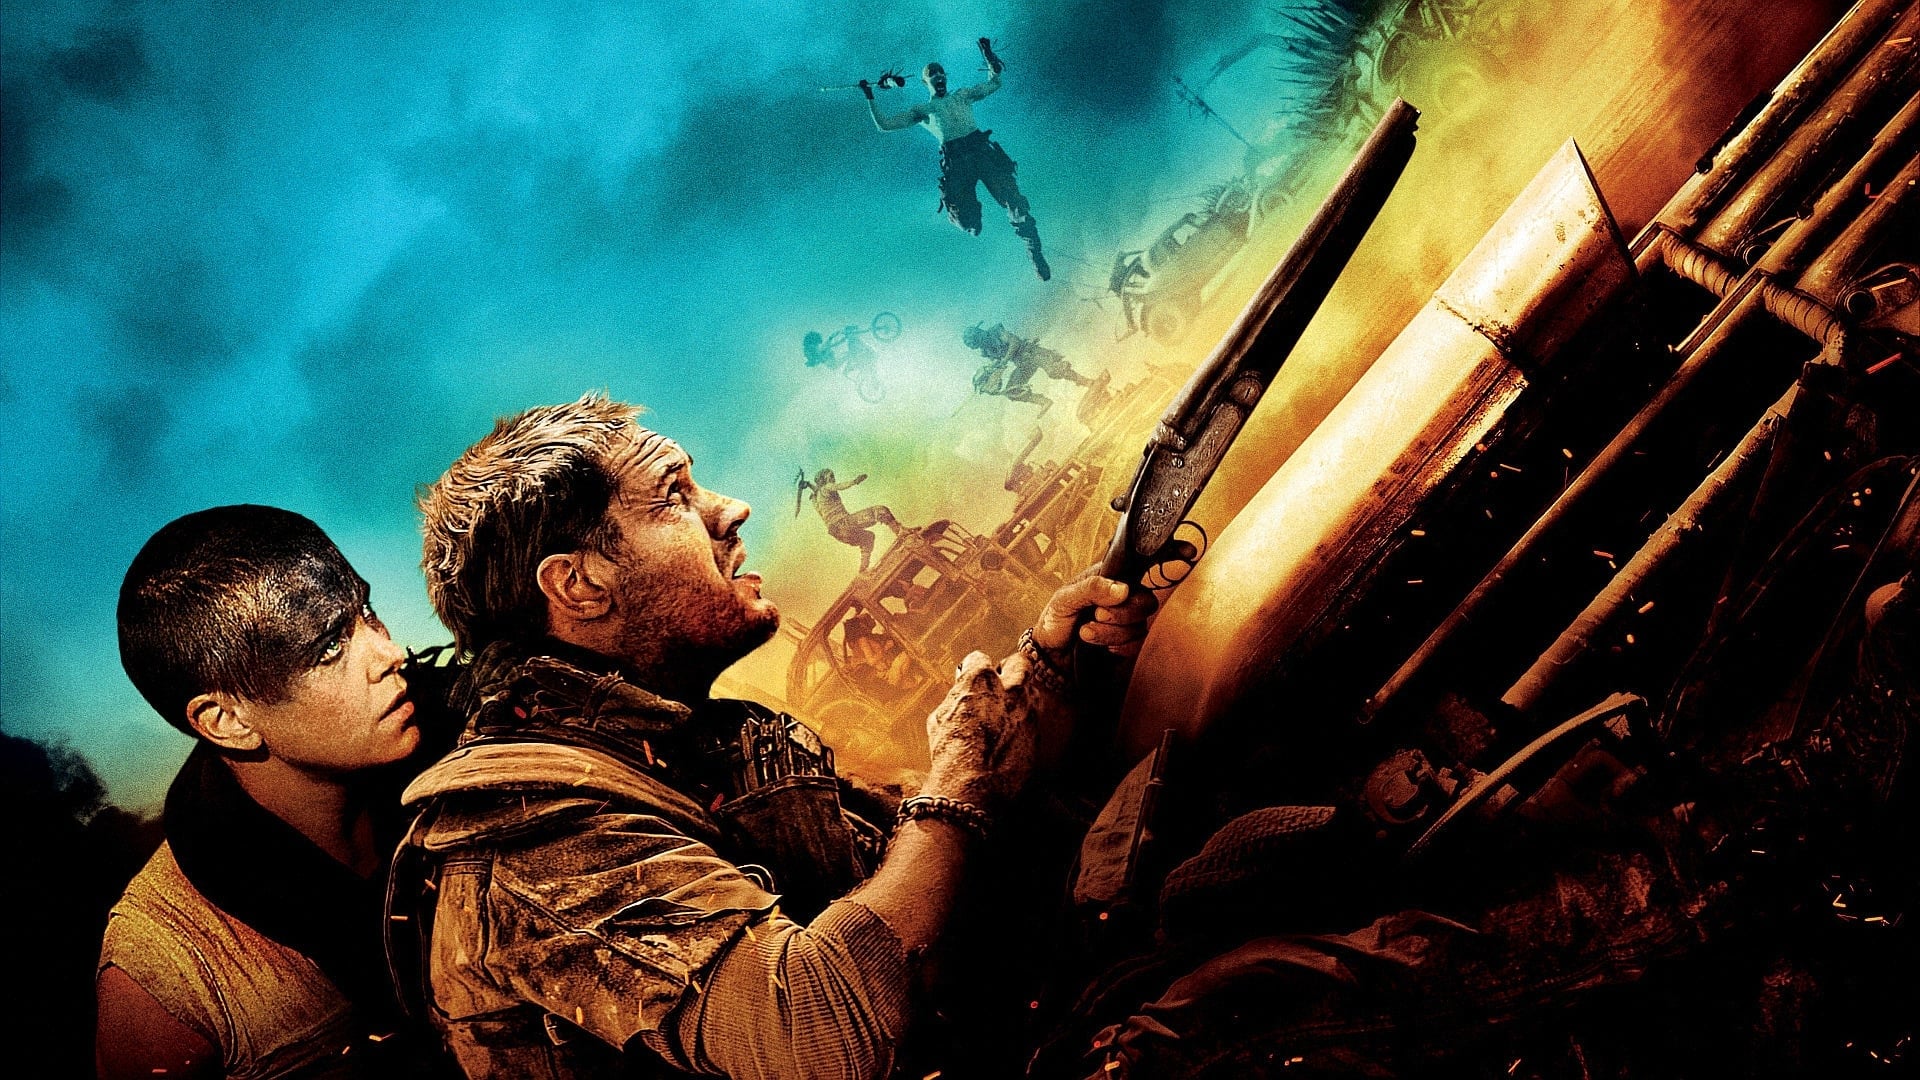 Image du film Mad Max : Fury Road - Black & Chrome nddyl7bcazob7zvy8vxbycls4ssjpg